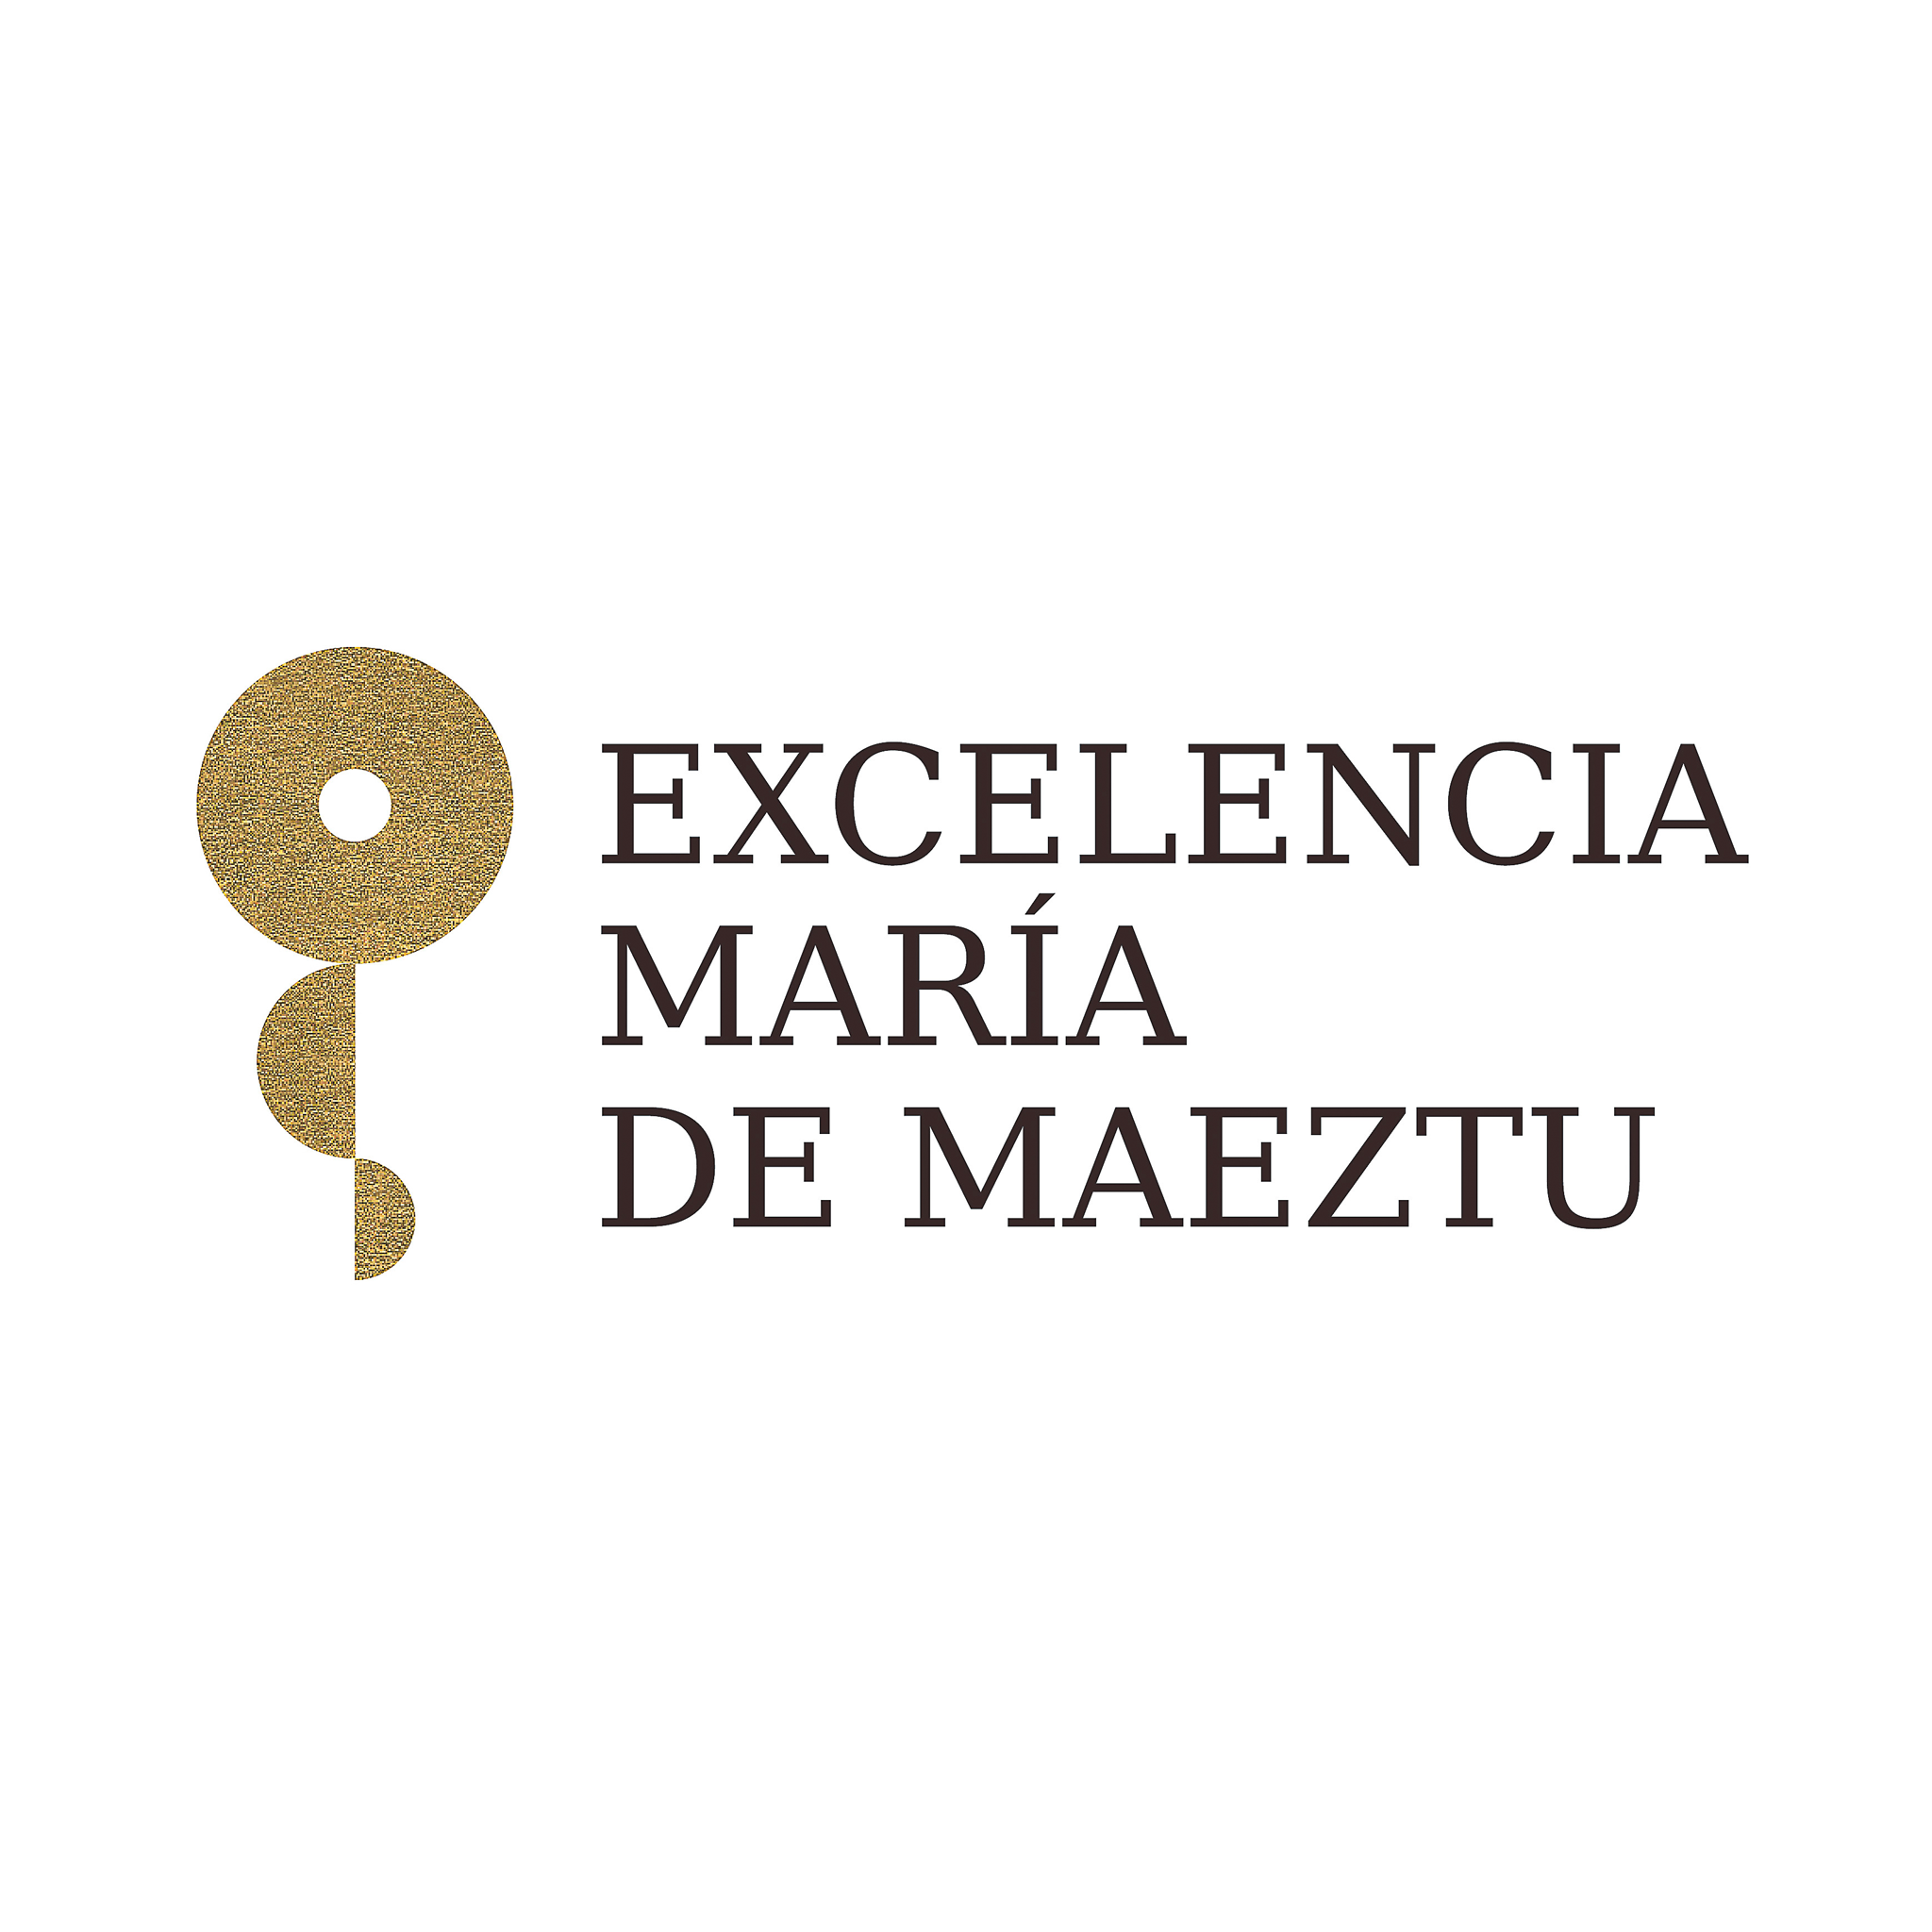 María de Maeztu